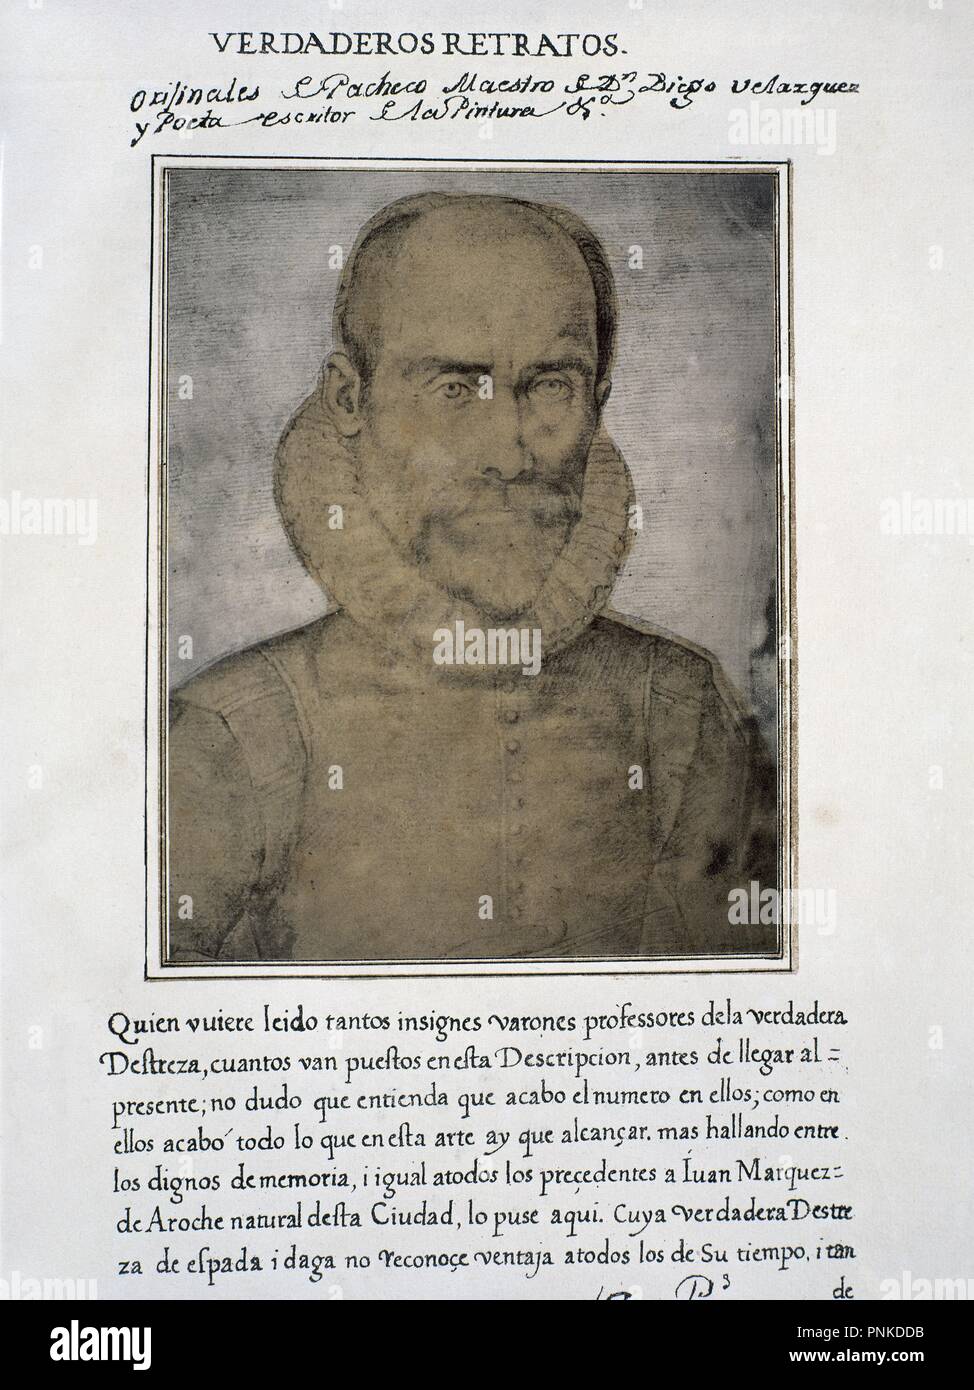 JUAN MARQUEZ DE AROCHE - LIBRO DE RETRATOS DE ILUSTRES Y MEMORABLES VARONES - 1599. Author: PACHECO, FRANCISCO. Location: BIBLIOTECA NACIONAL-COLECCION. MADRID. SPAIN. Stock Photo